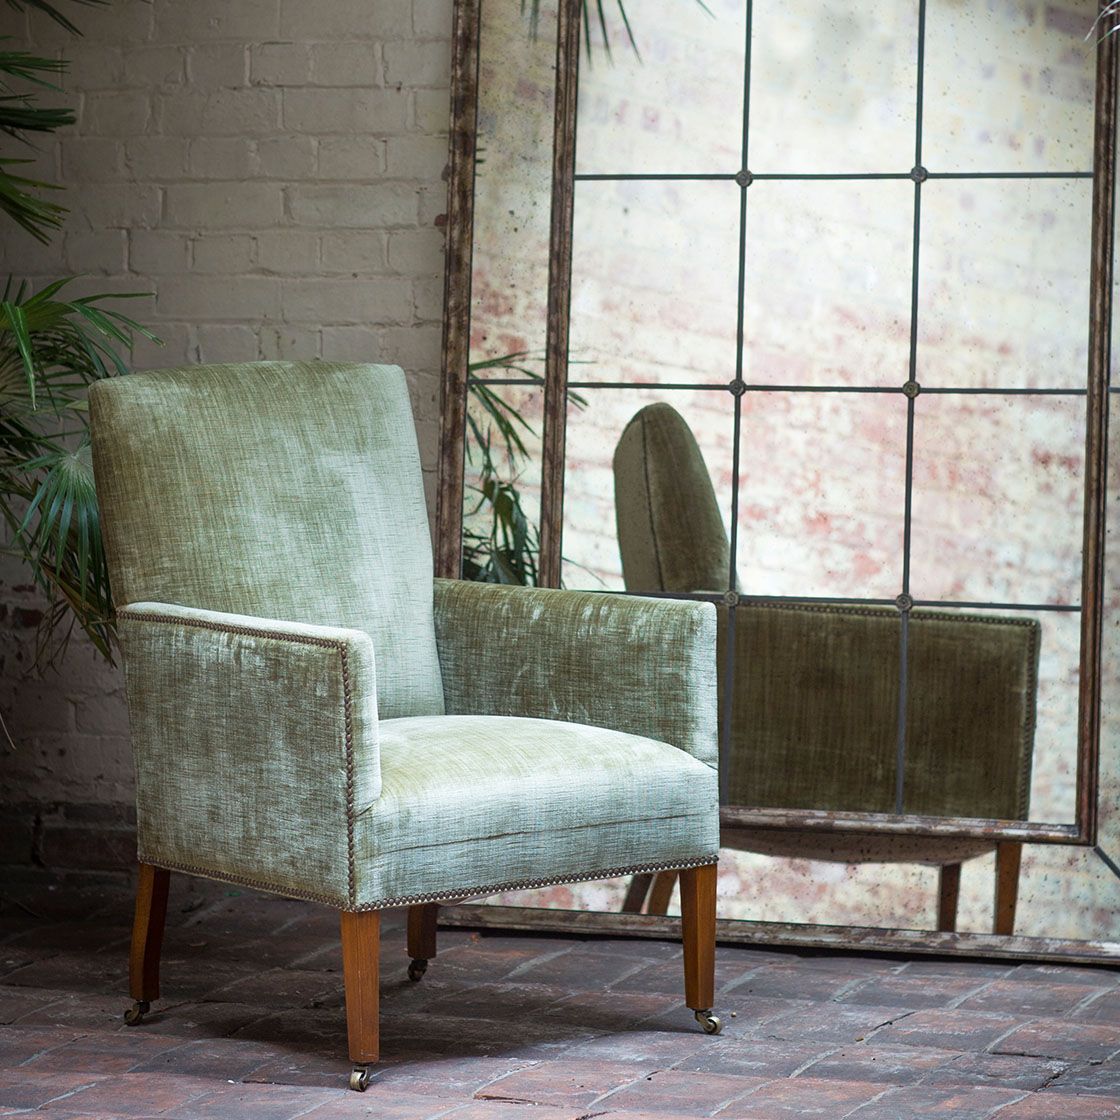 Nicholas chair in Como silk velvet - Fern with Panelled mirror - Beaumont & Fletcher